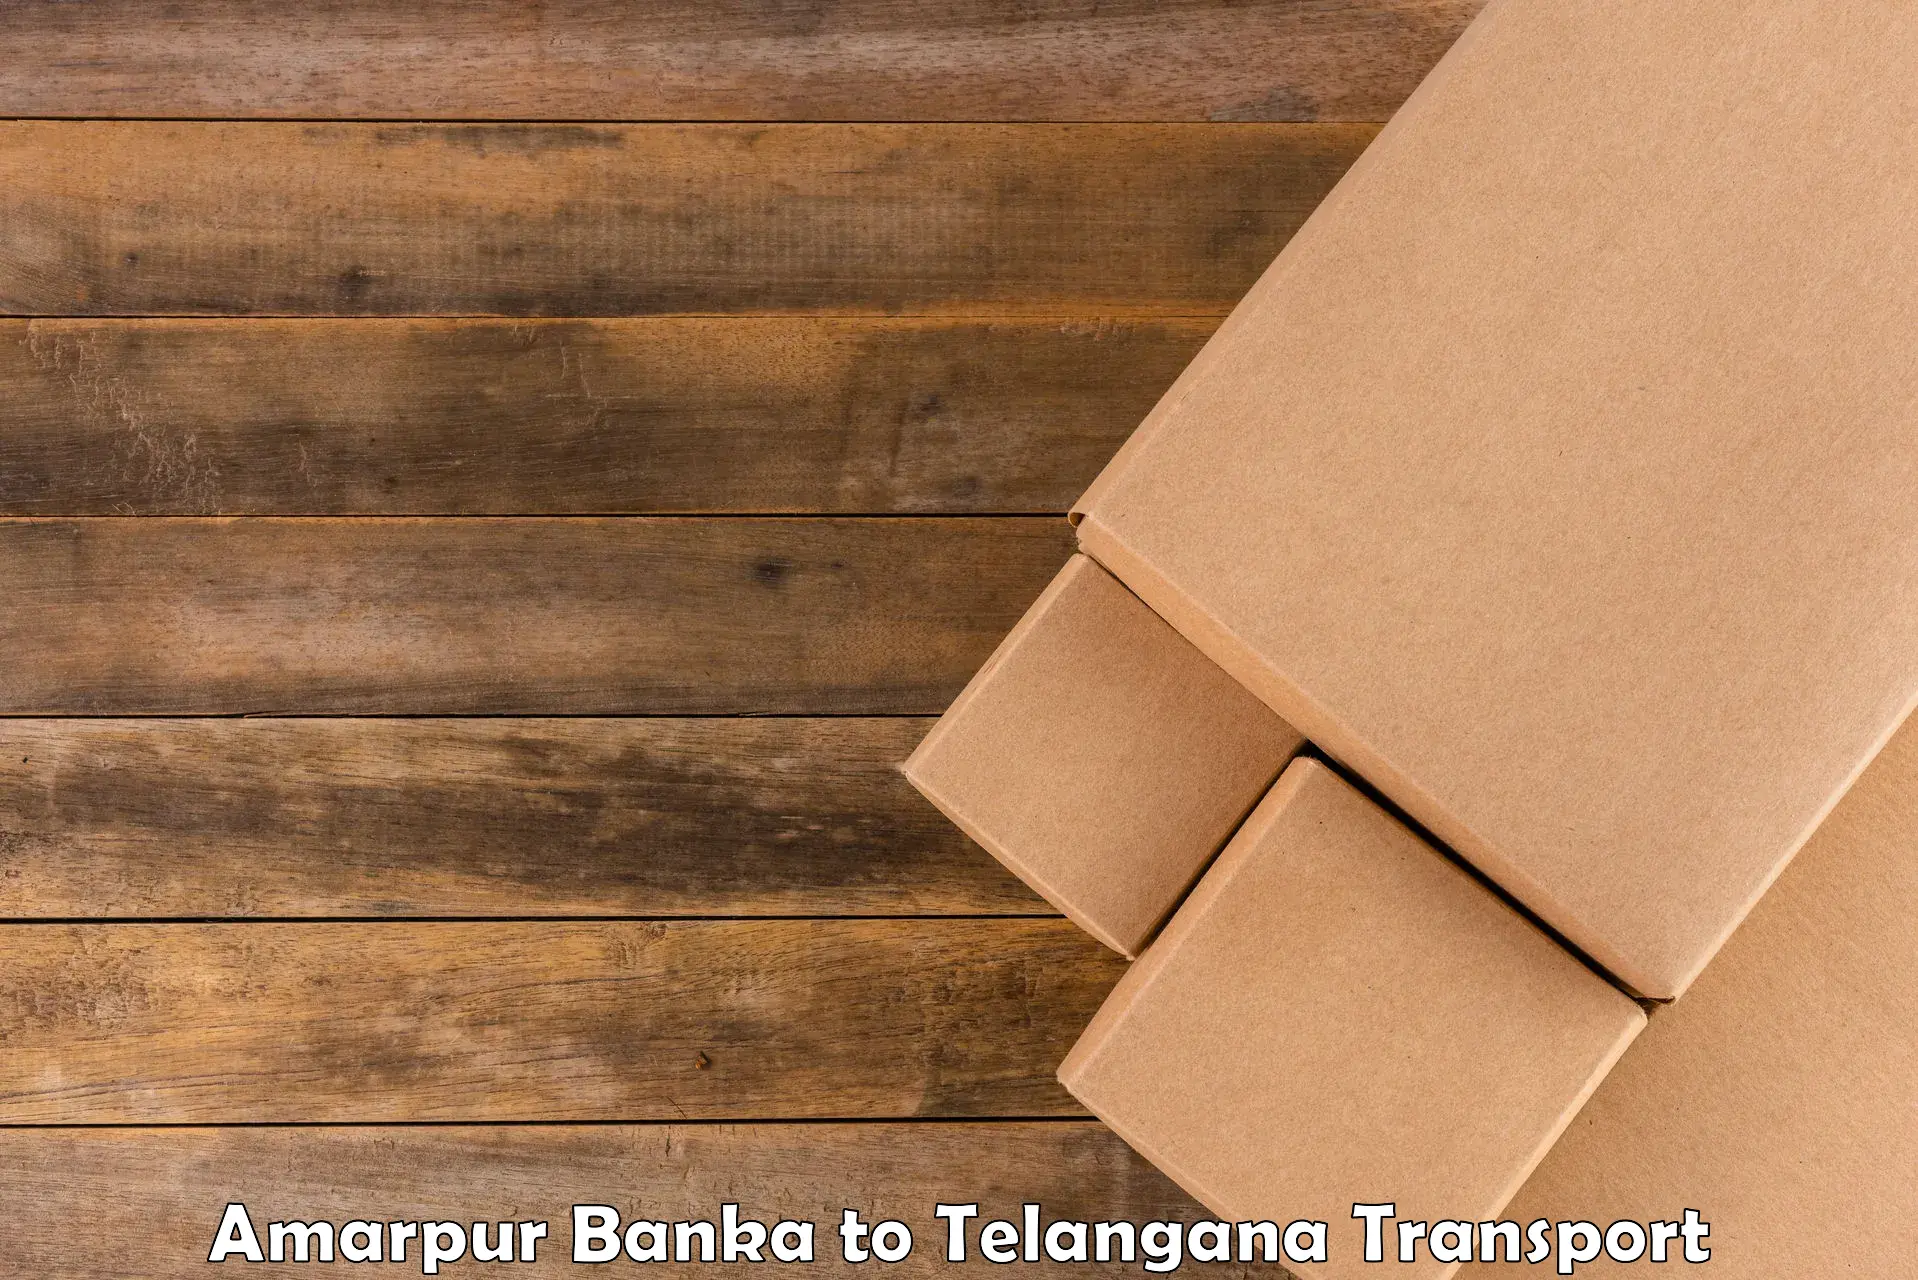 Transport in sharing Amarpur Banka to Patancheru